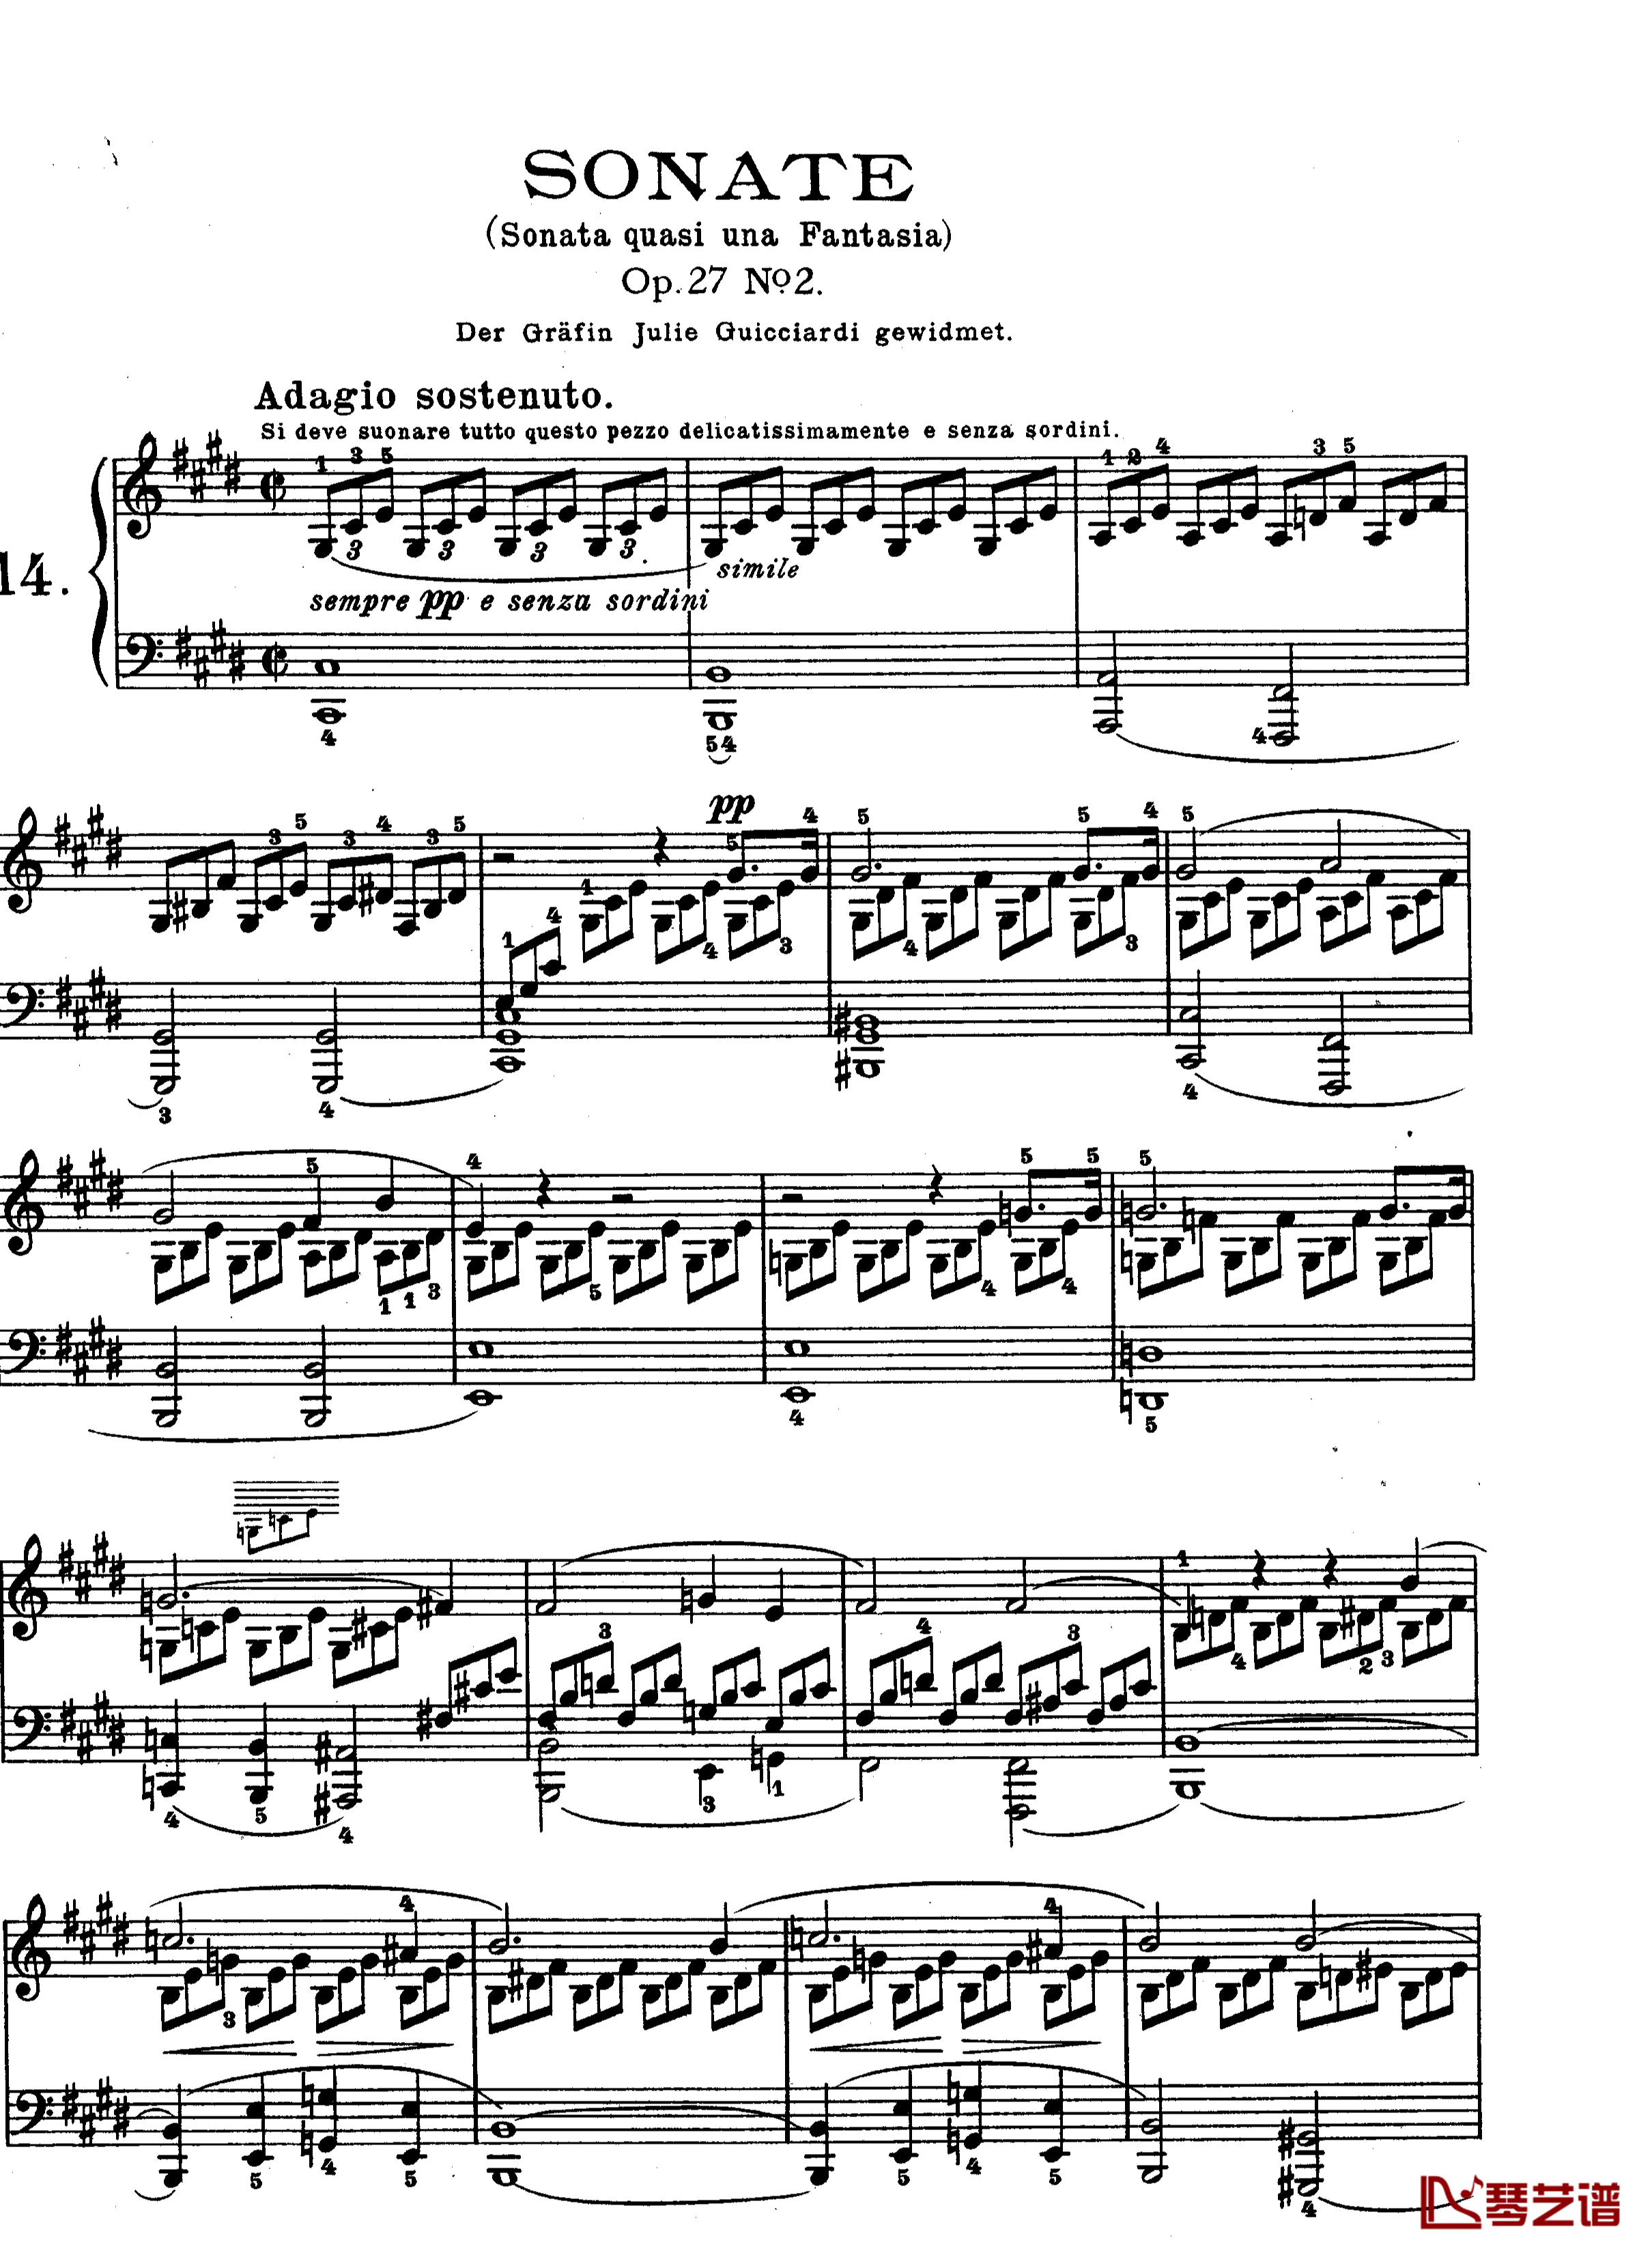 月光曲钢琴谱-第十四钢琴奏鸣曲-Op.27 No.2-贝多芬-beethoven1